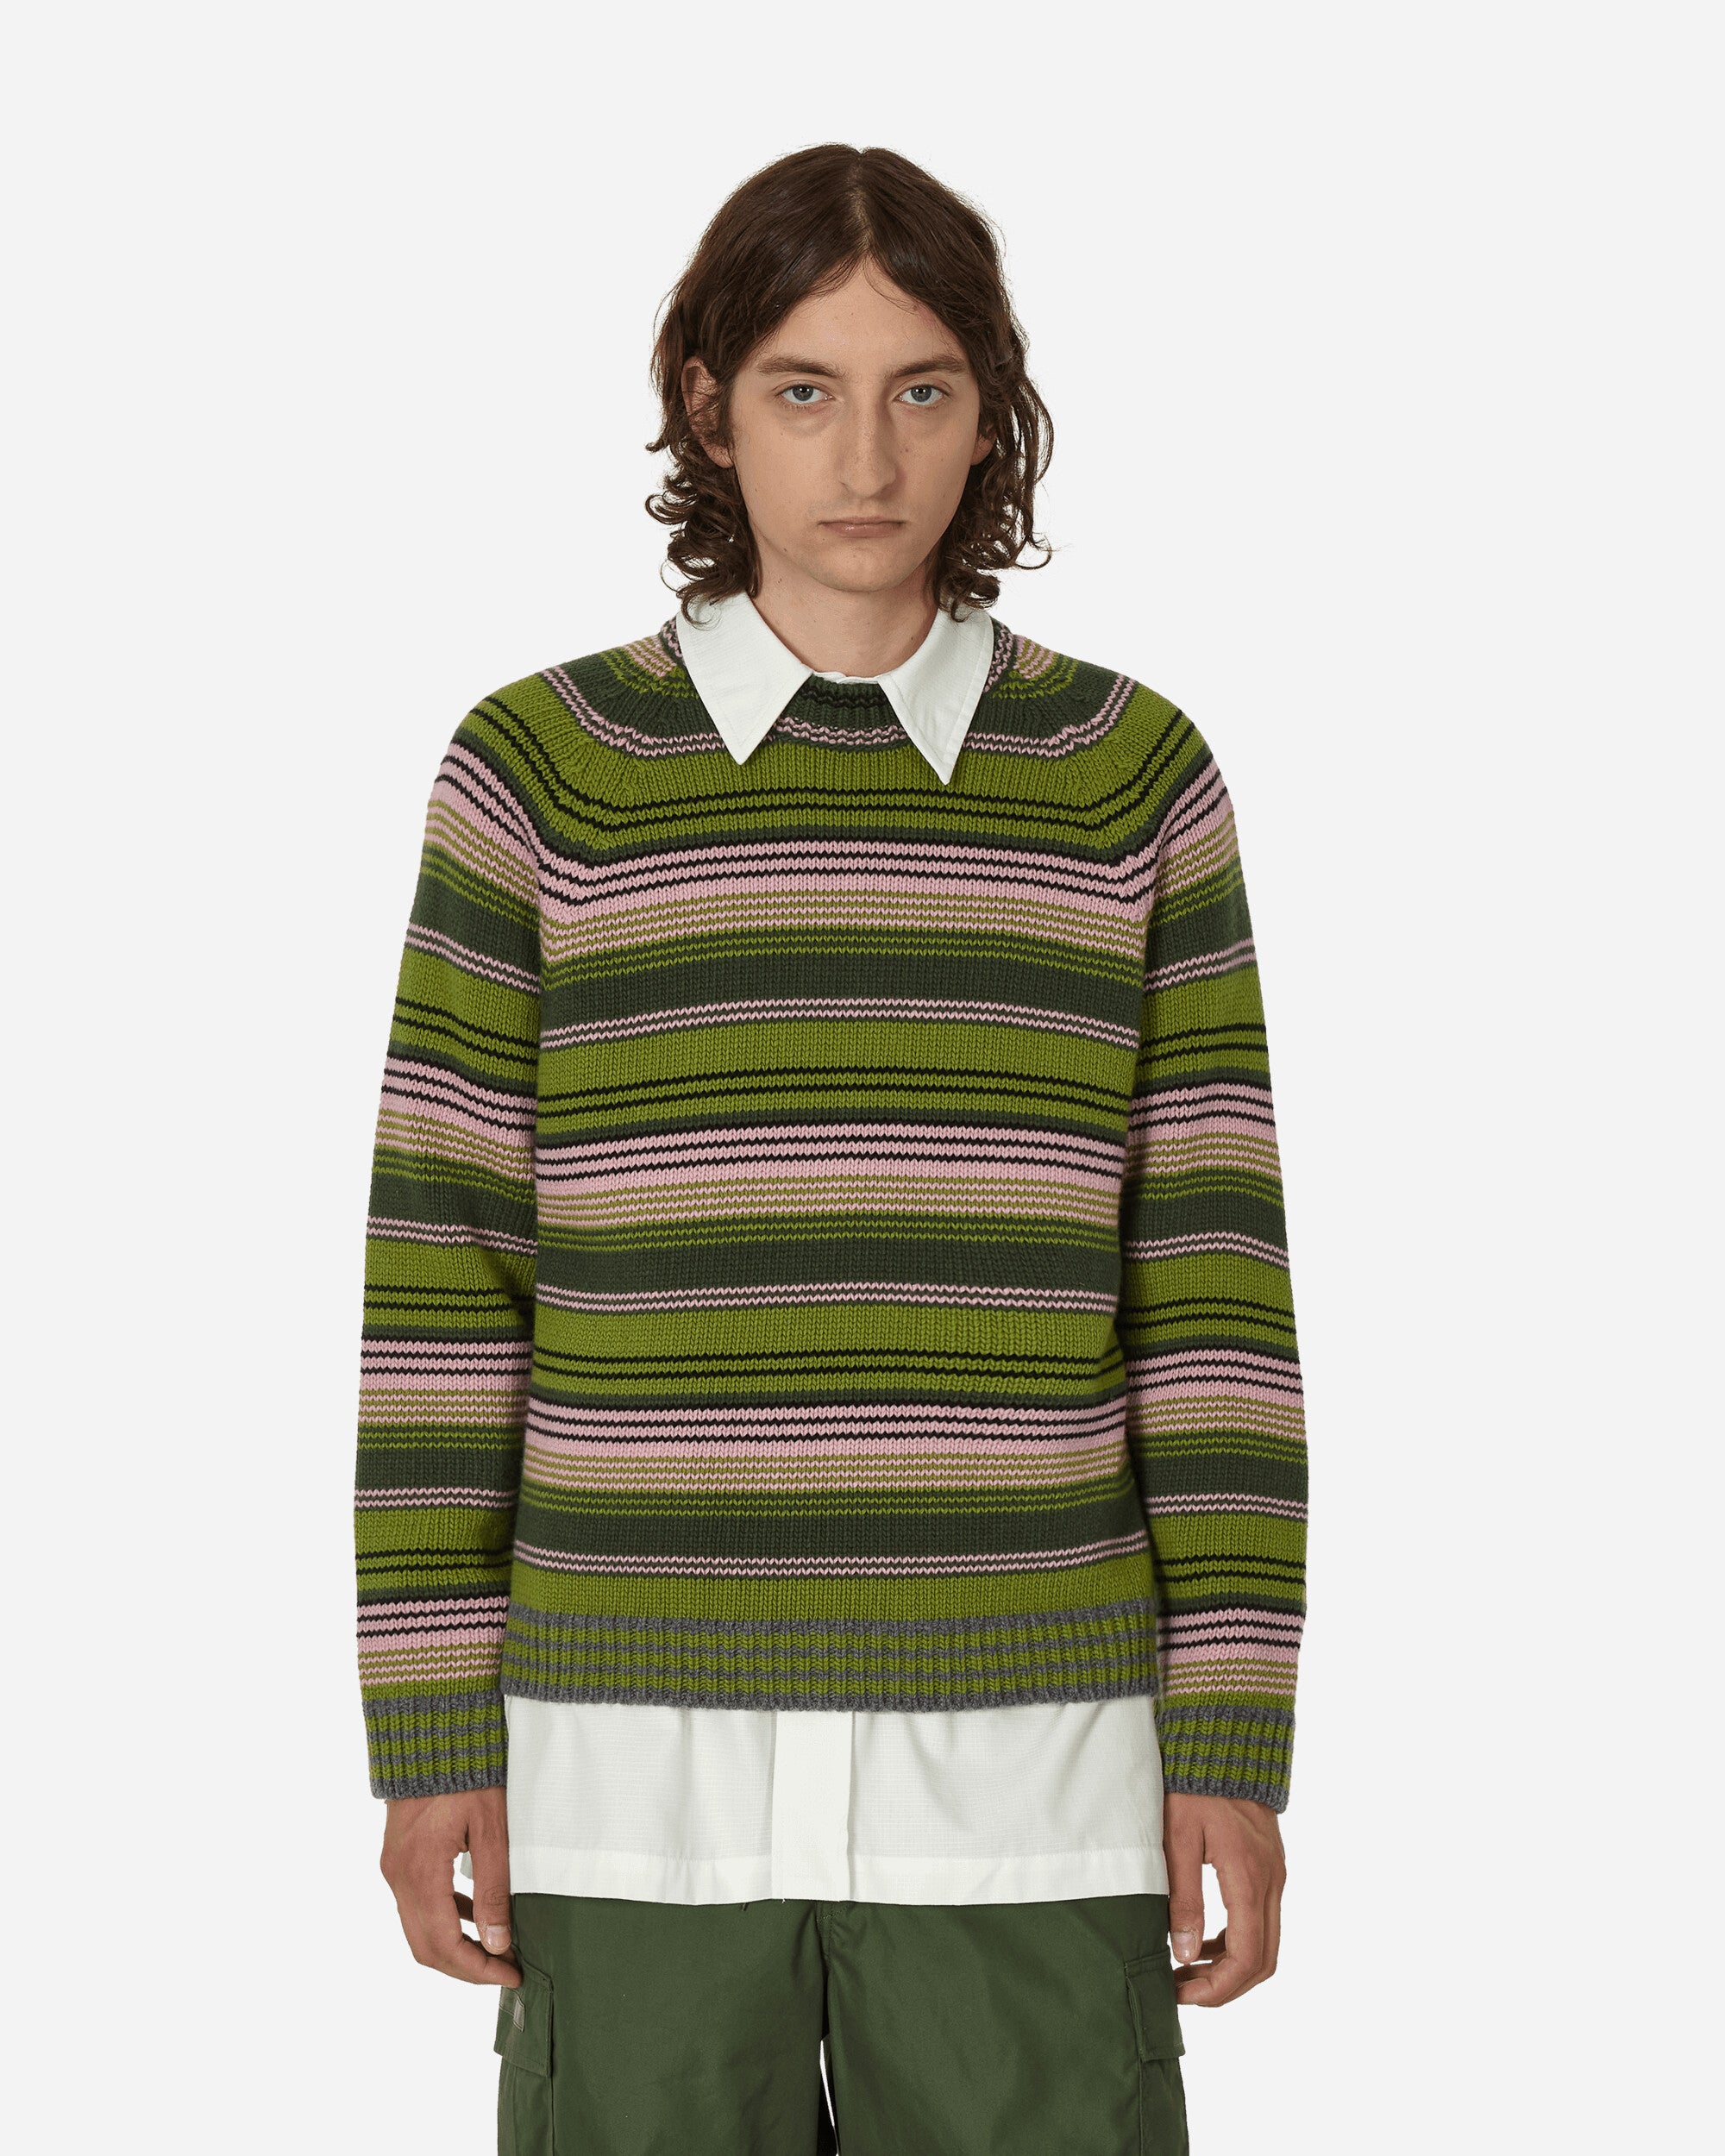 KENZO Paris Kenzo Rue Vivienne Jumper Green Knitwears Sweaters FD65PU4033CP 56